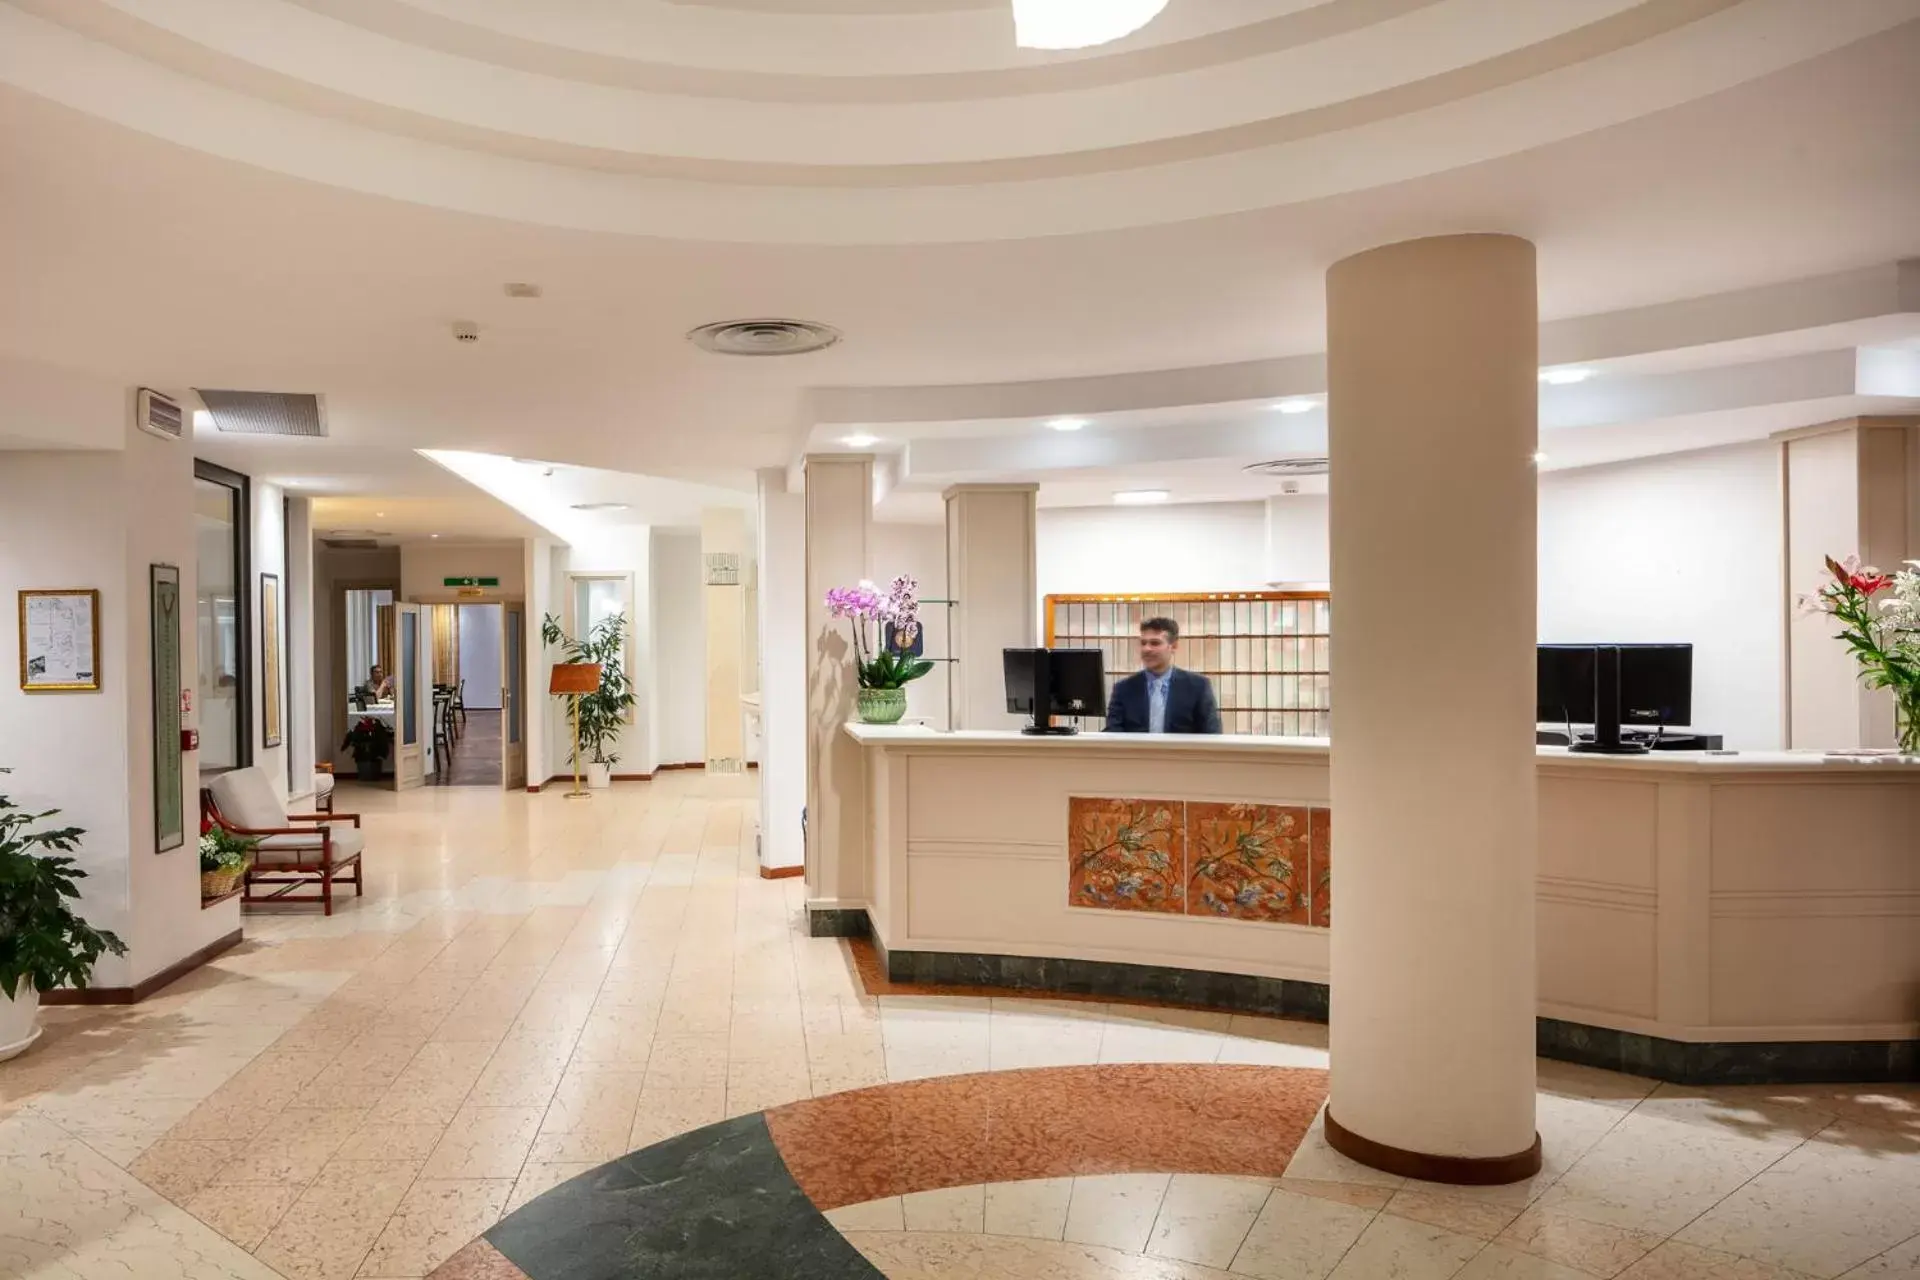 Lobby or reception, Lobby/Reception in Hotel Carlo Felice